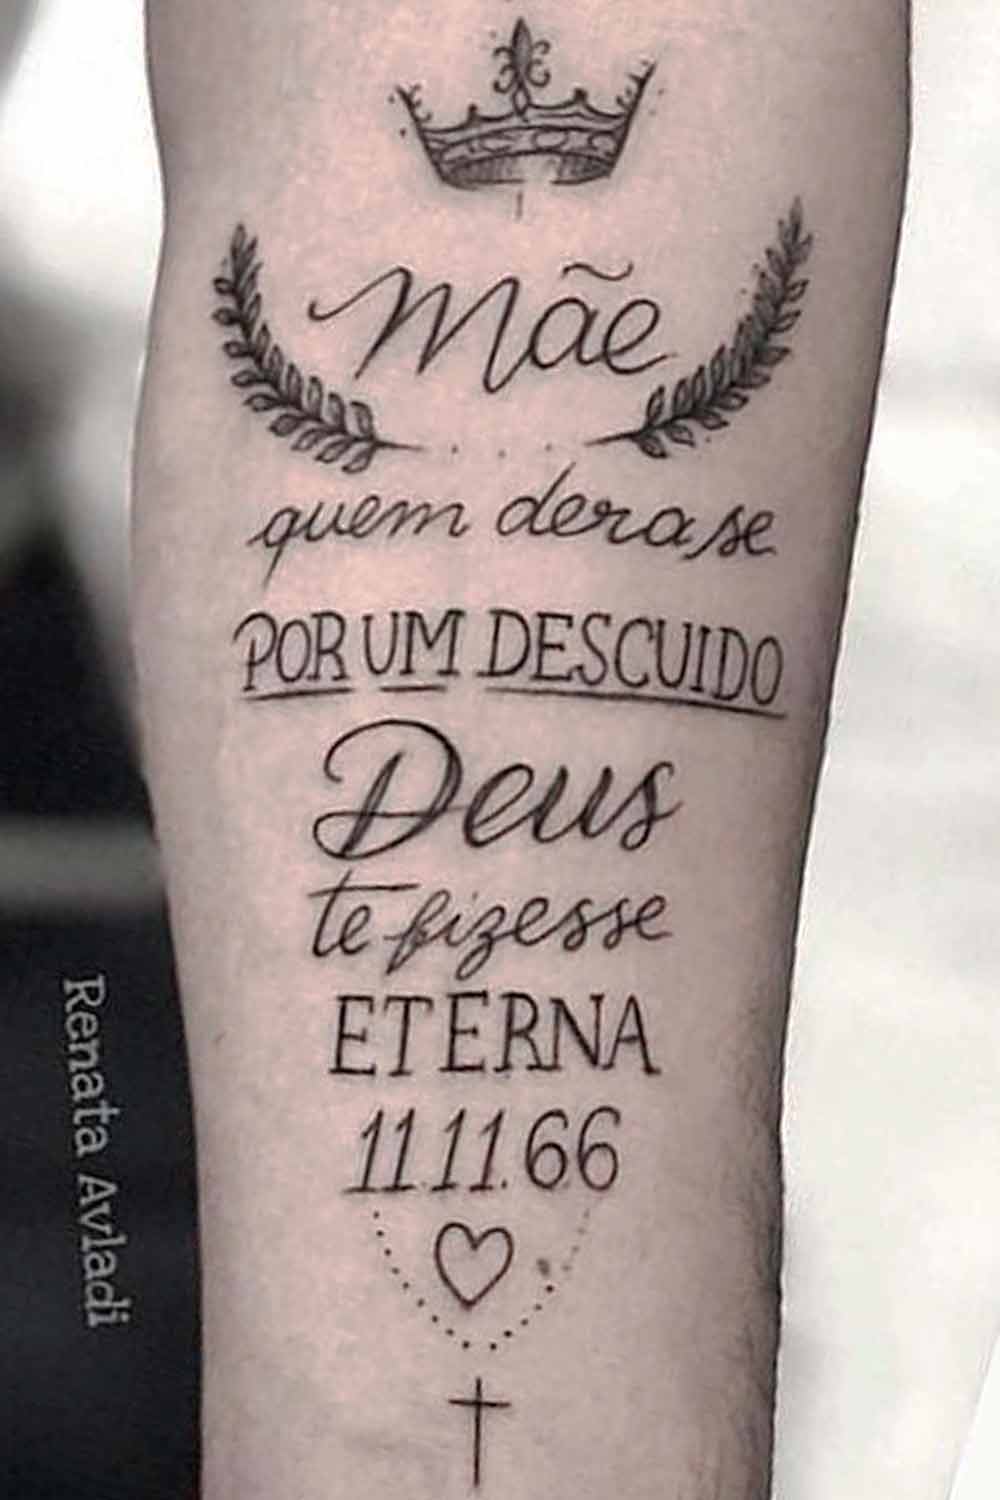 tatuagem-escrita-mae-quem-dera-se-por-um-descuido-deus-te-fizesse-eterna 